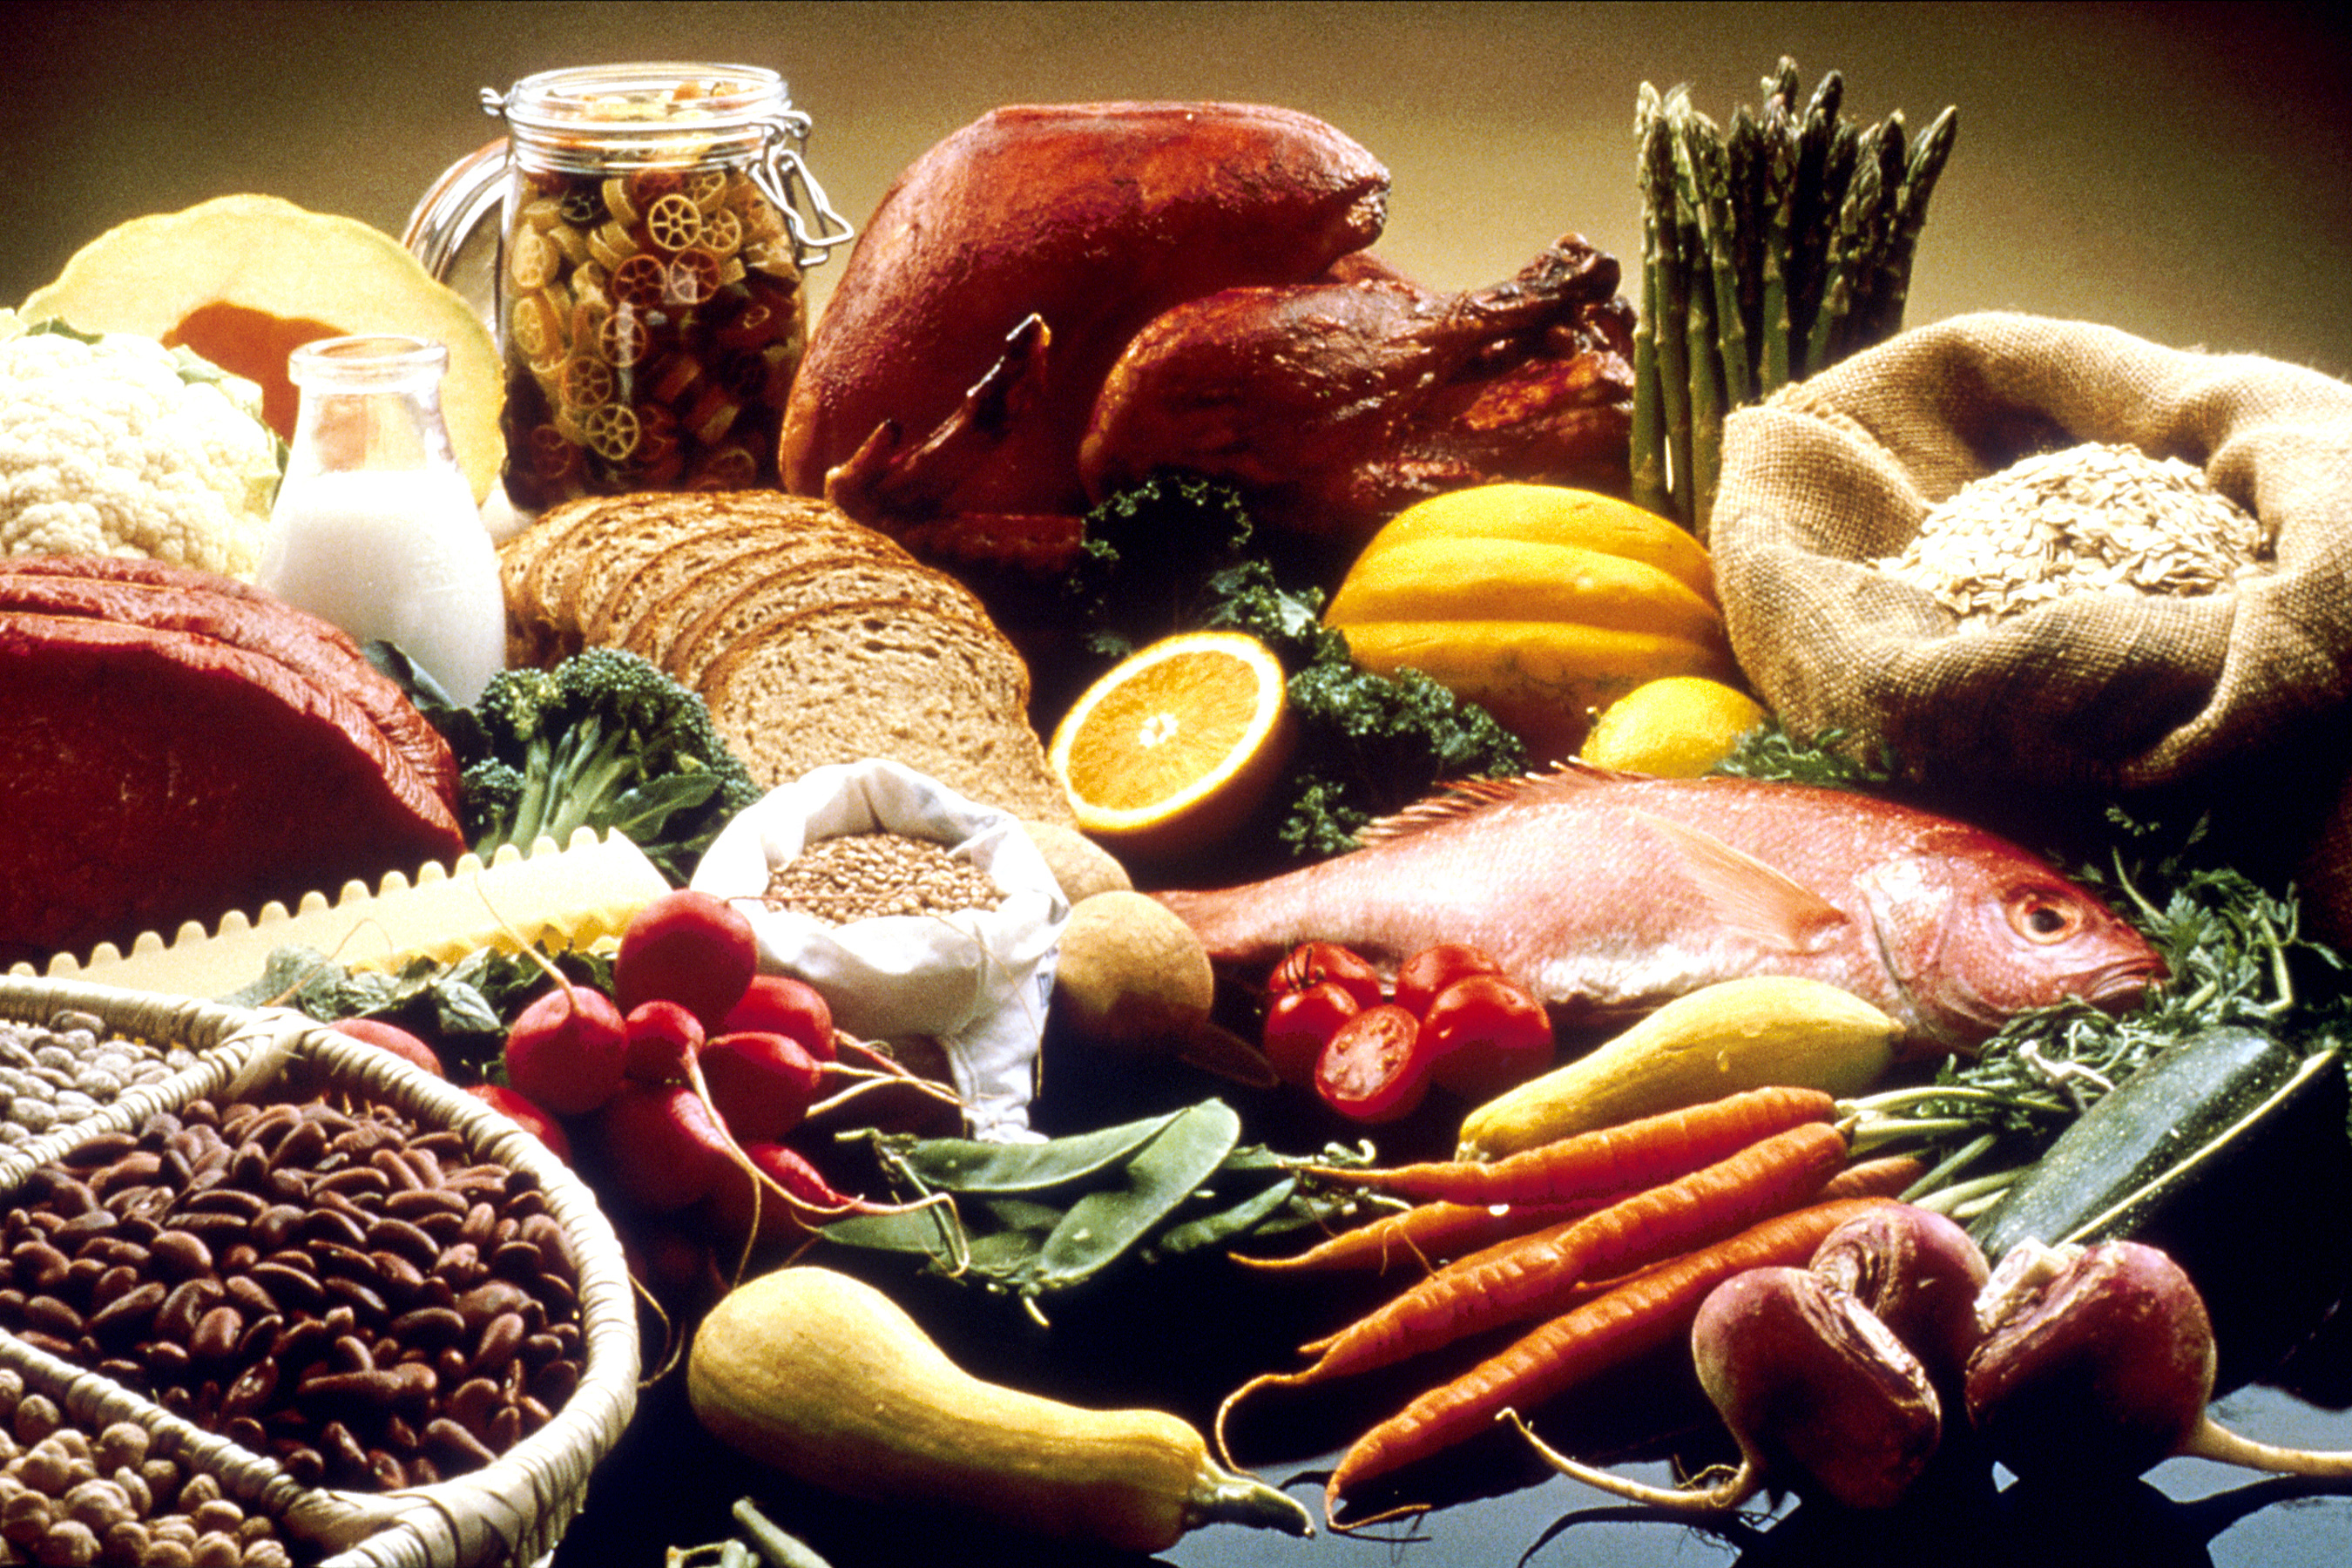 Здоровое питание. как правильно питаться и какие продукты выбрать для сбалансированного рациона всей семьи?